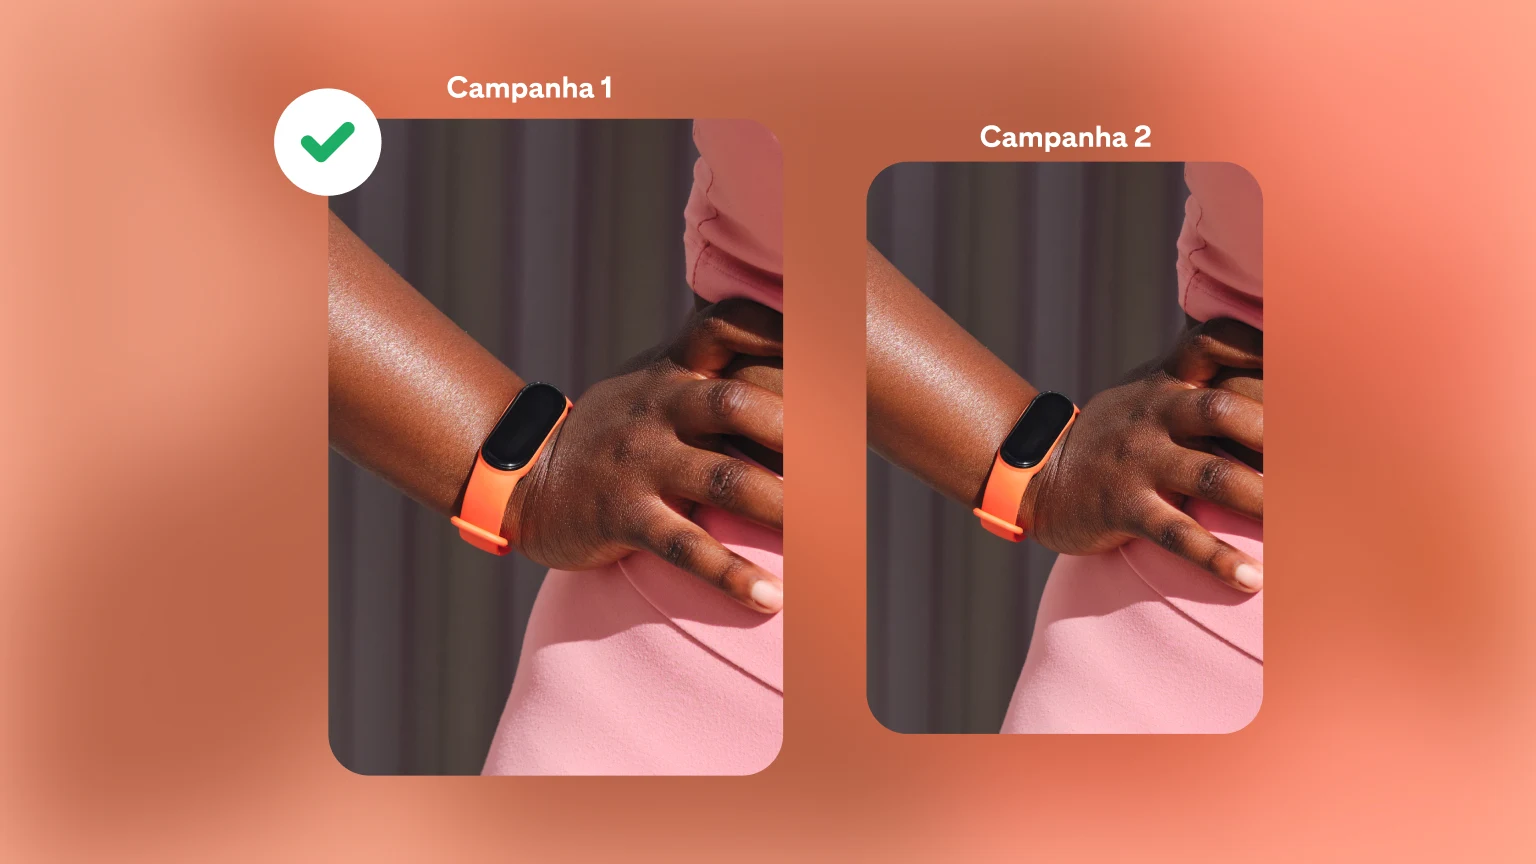 Duas campanhas de relógios sobre um fundo laranja vibrante. A campanha 1 está destacada como escolhida, com uma marca de seleção verde.